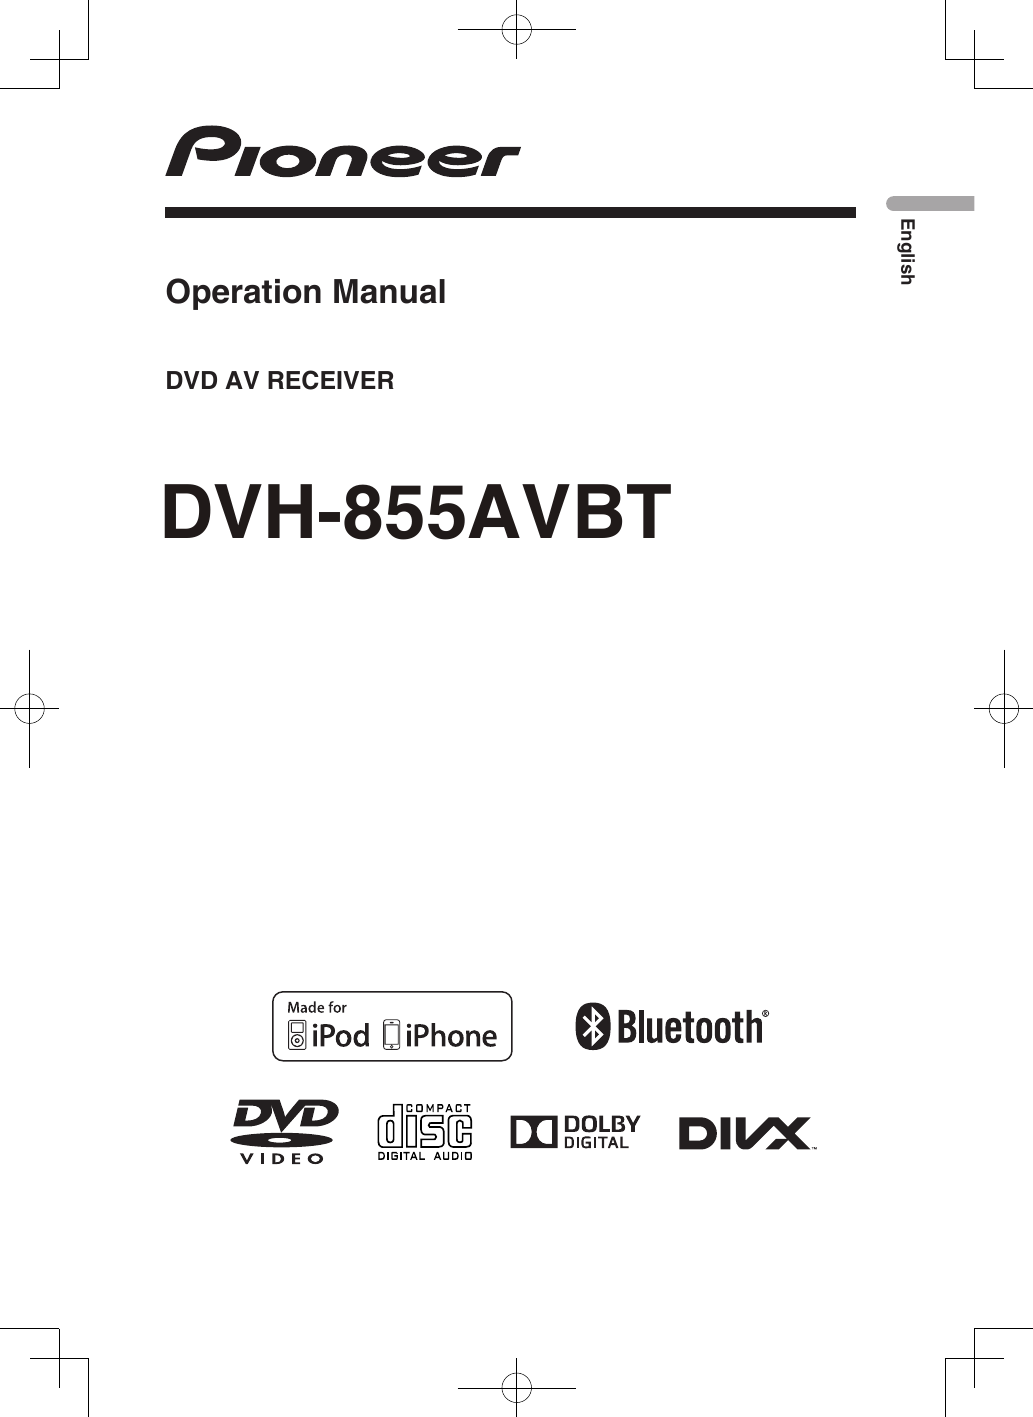 DVH-855AVBTEnglishDVD AV RECEIVEROperation Manual